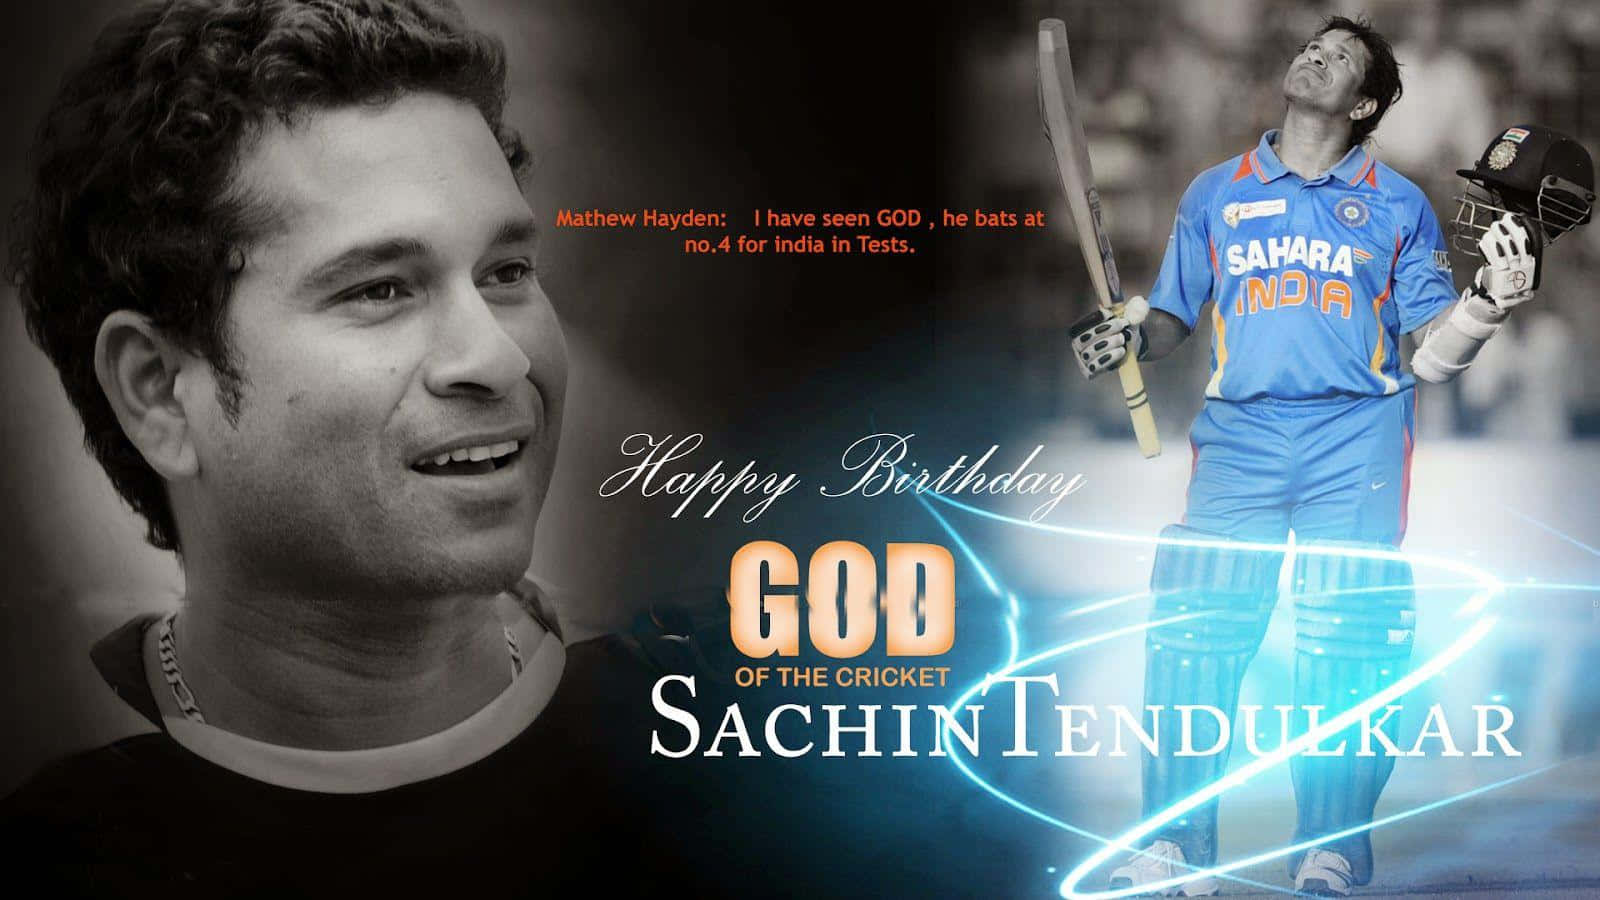 Download Legendary cricketer Sachin Tendulkar Wallpaper | Wallpapers.com